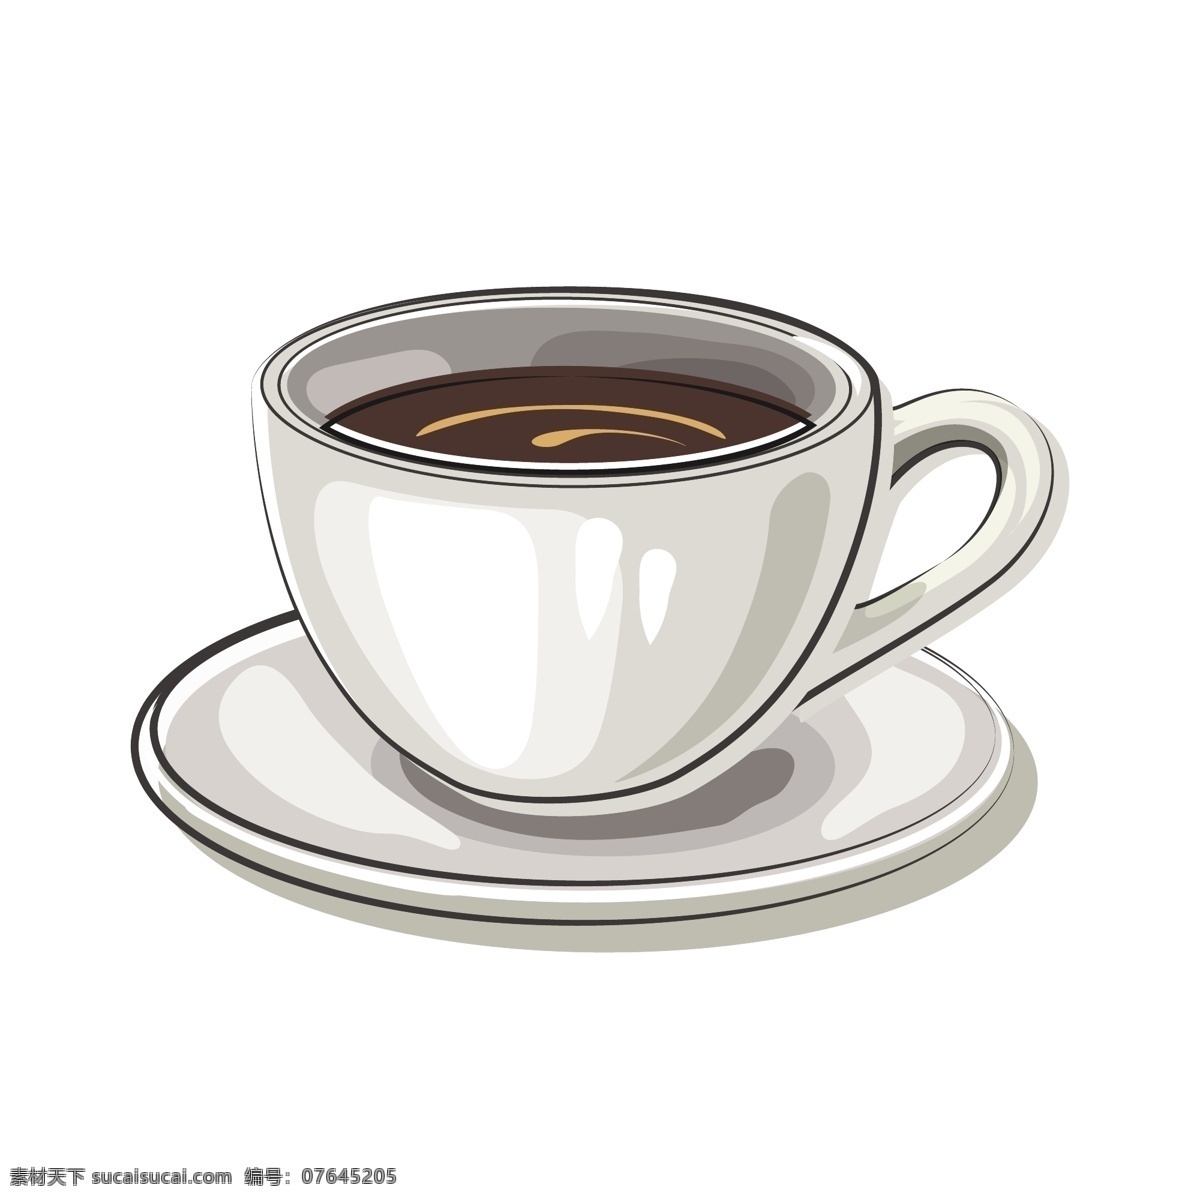 浓香 咖啡 矢量 浓香的 浓香的咖啡 美味 美味的 美味的咖啡 卡通 卡通的咖啡杯